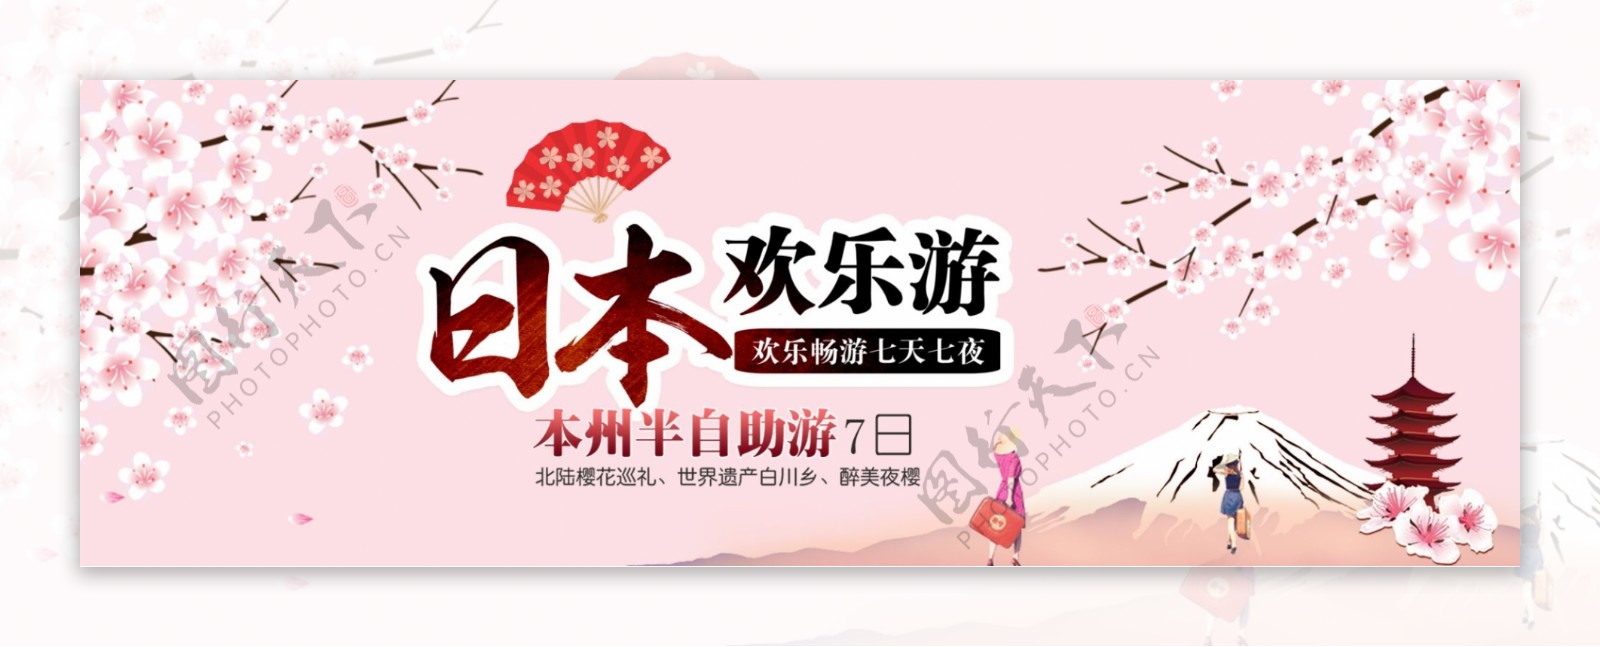 淘宝天猫电商国庆节日本欢乐游旅游可爱海报banner黄金周模板